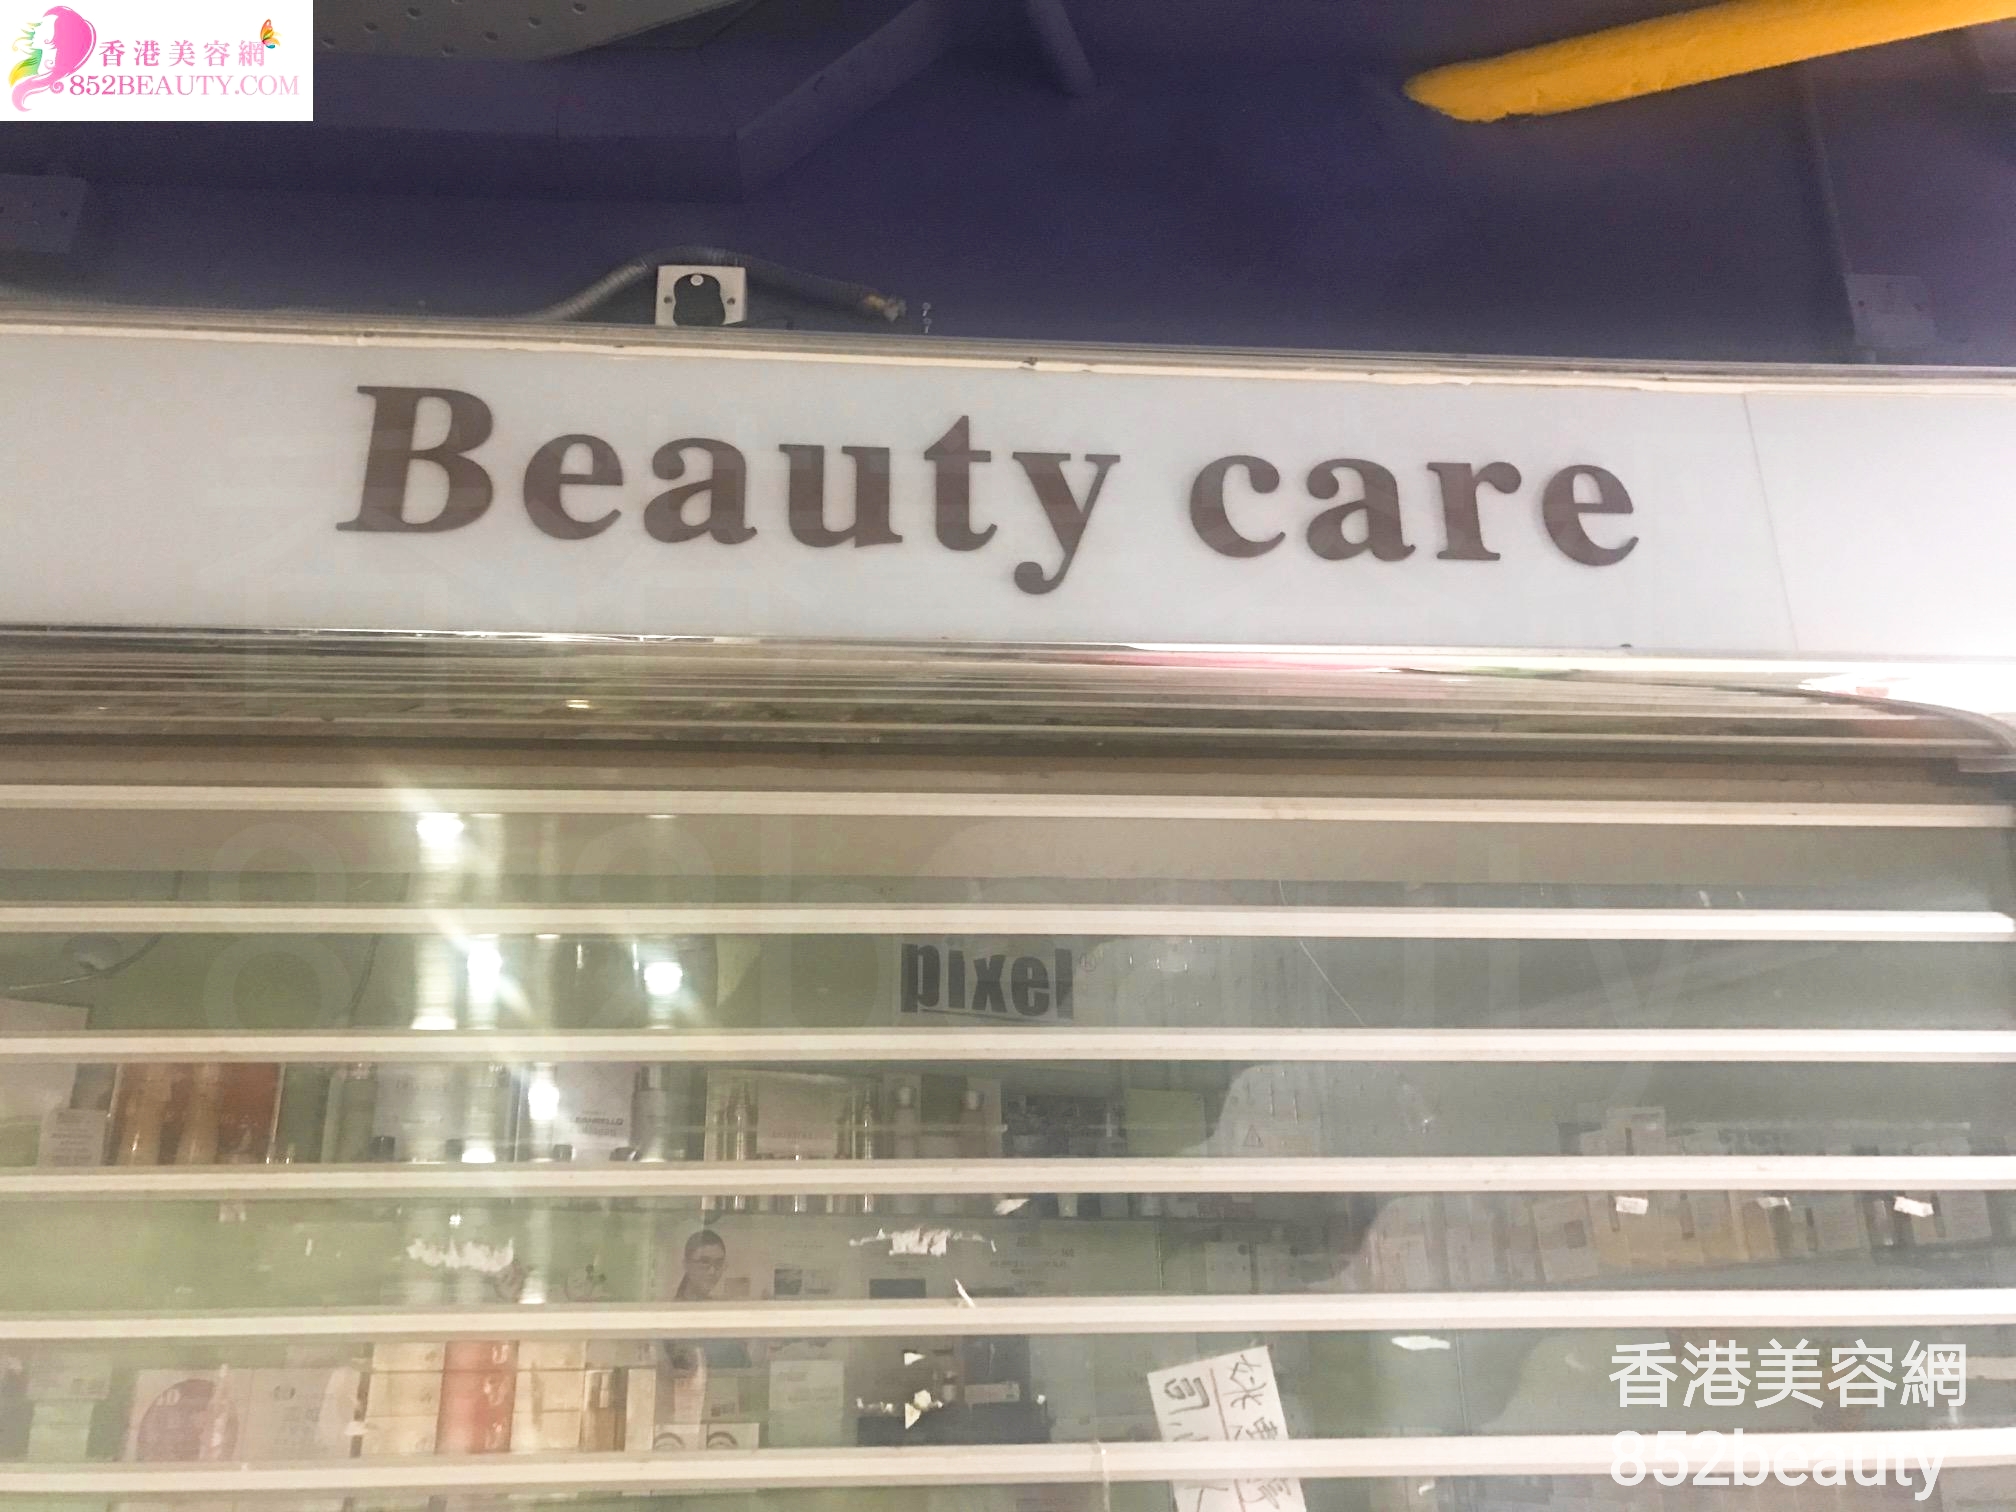 面部護理: Beauty care